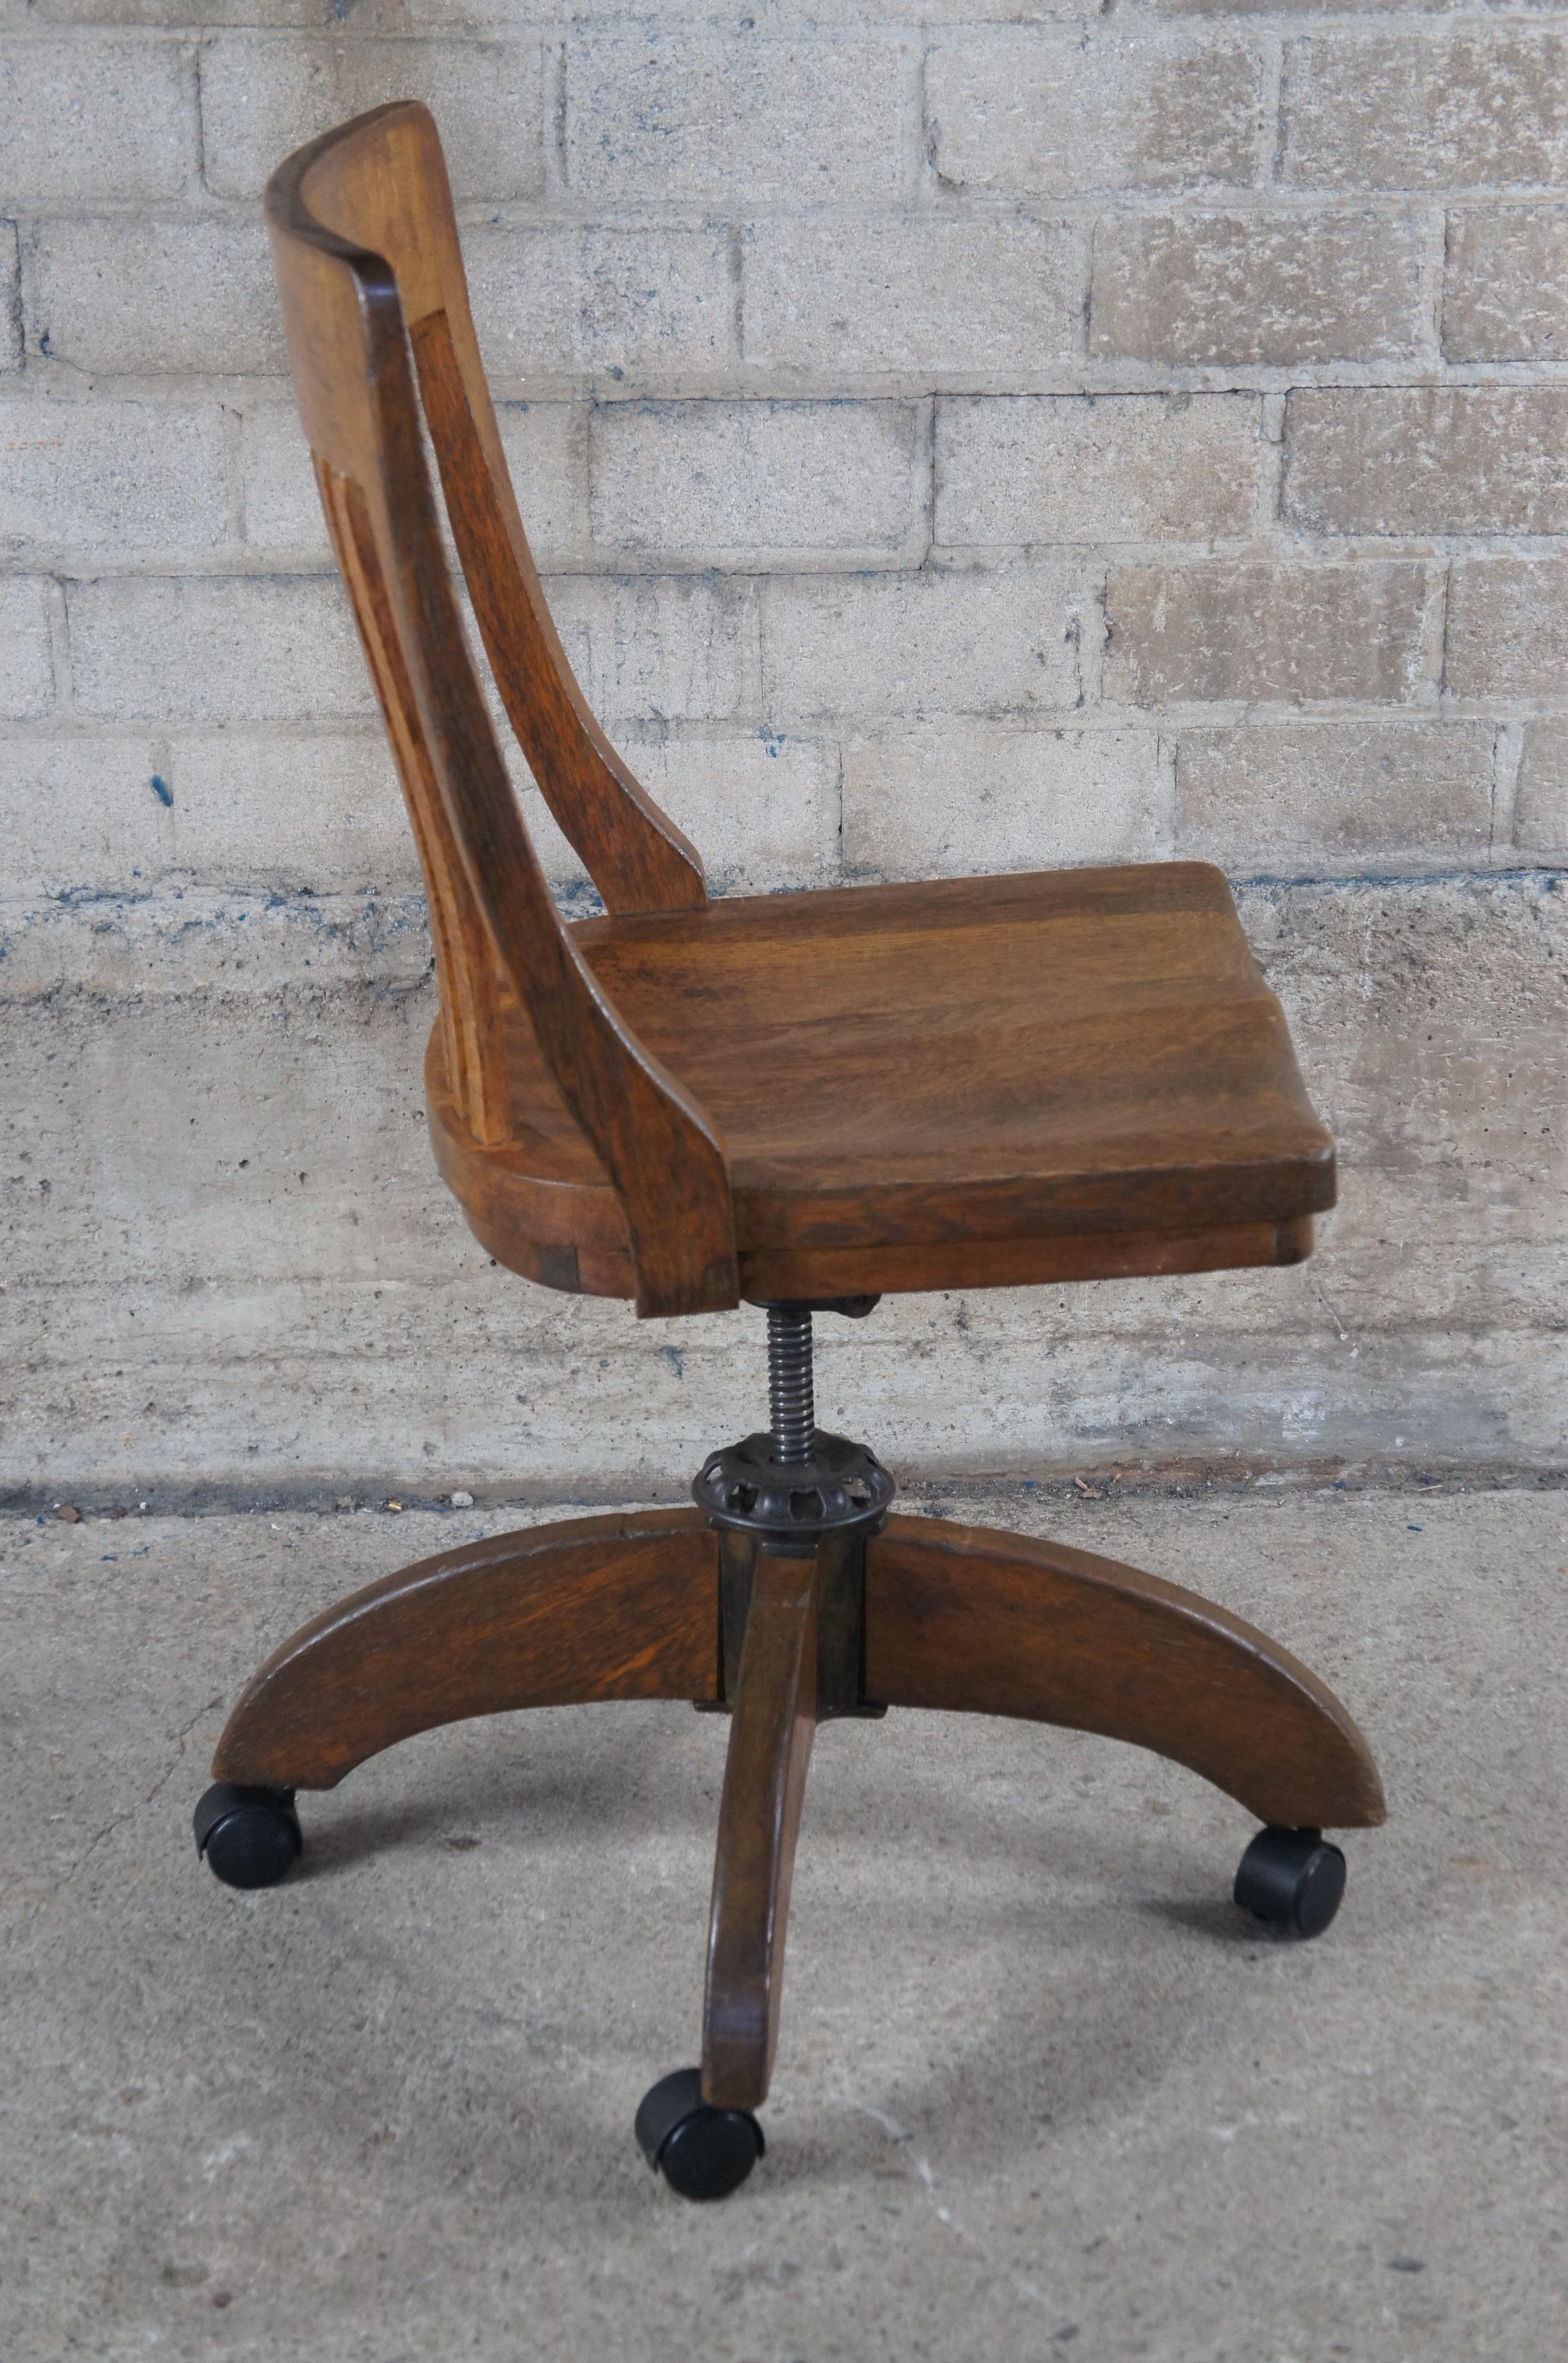 antique desk chair no wheels